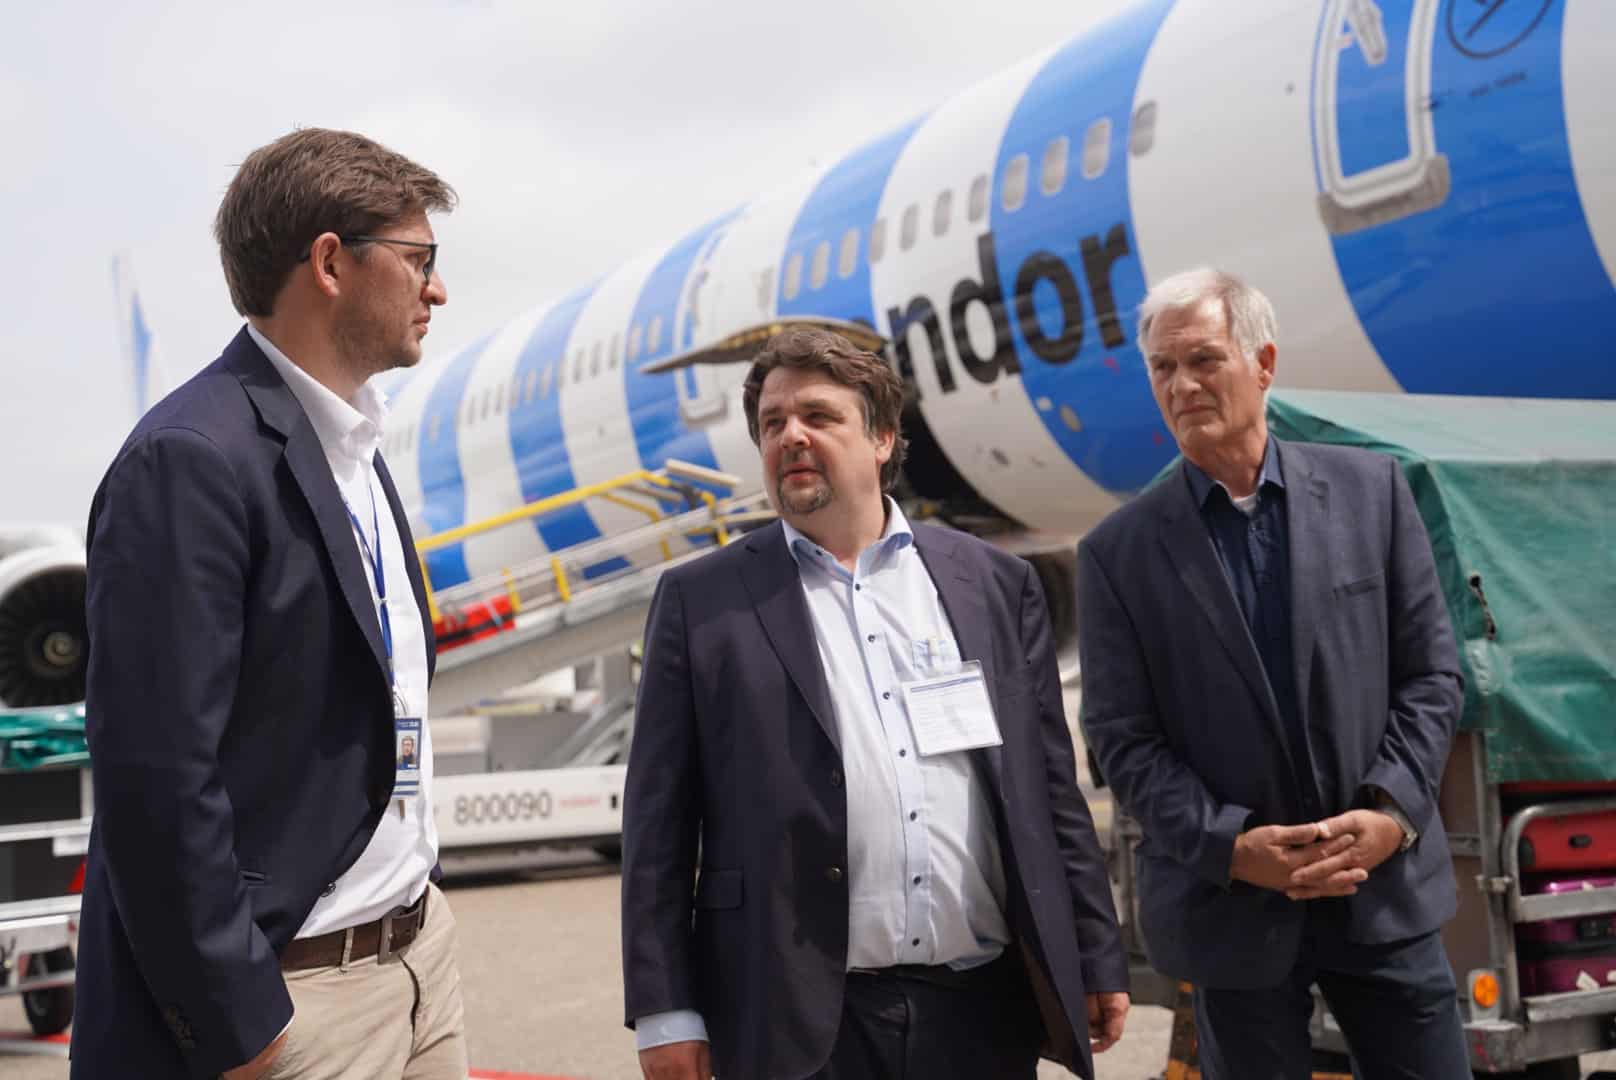 Dennis Radtke, député européen, en conversation avec des représentants de la direction de l'aéroport (de gauche à droite) : Fabian Zachel (responsable des affaires publiques), Dennis Radtke, député européen (CDU), Peter Nengelten (bureau de voisinage de l'aéroport).